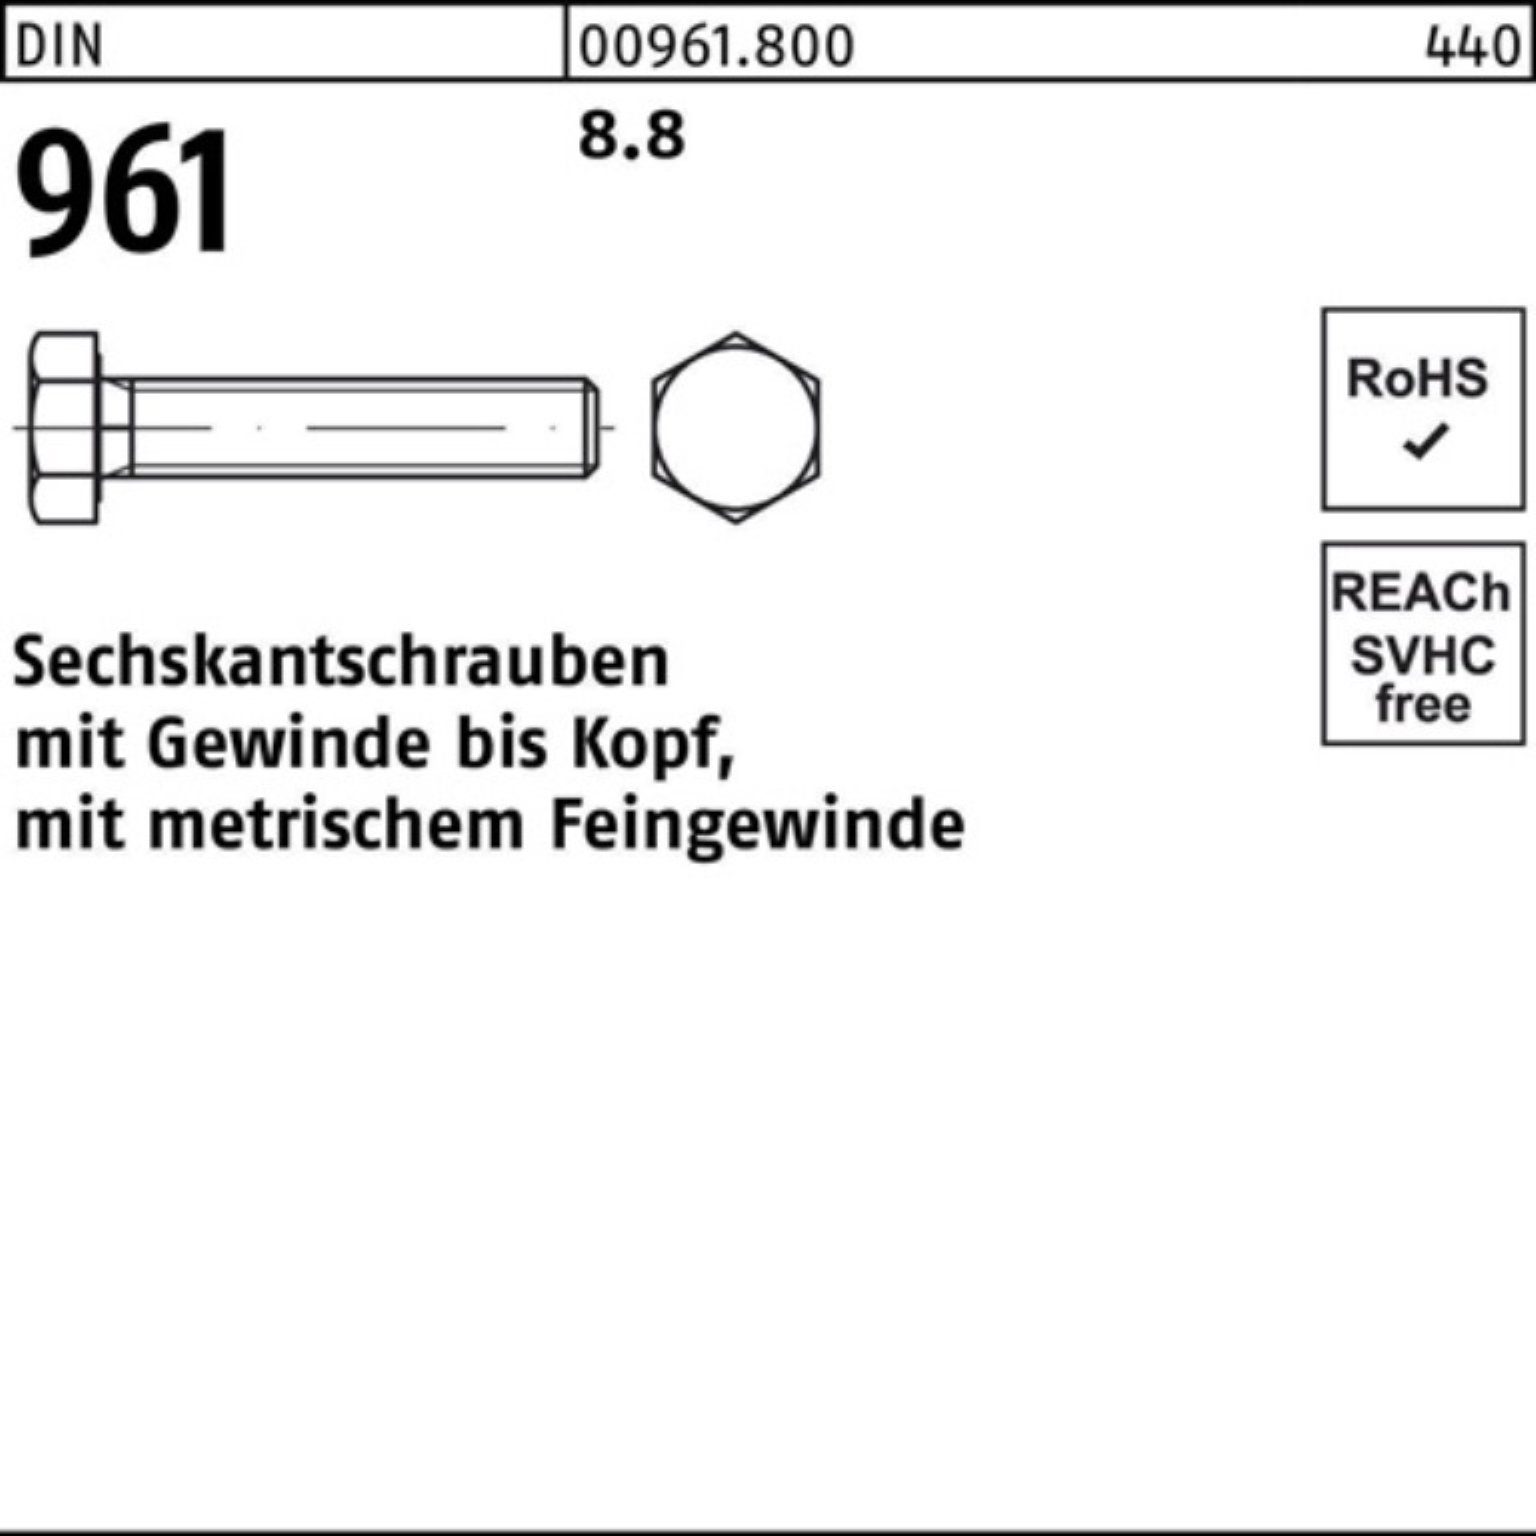 8.8 DIN VG Pack Sechskantschraube 80 1 M30x2x DIN 100er Reyher Stück 961 961 Sechskantschraube